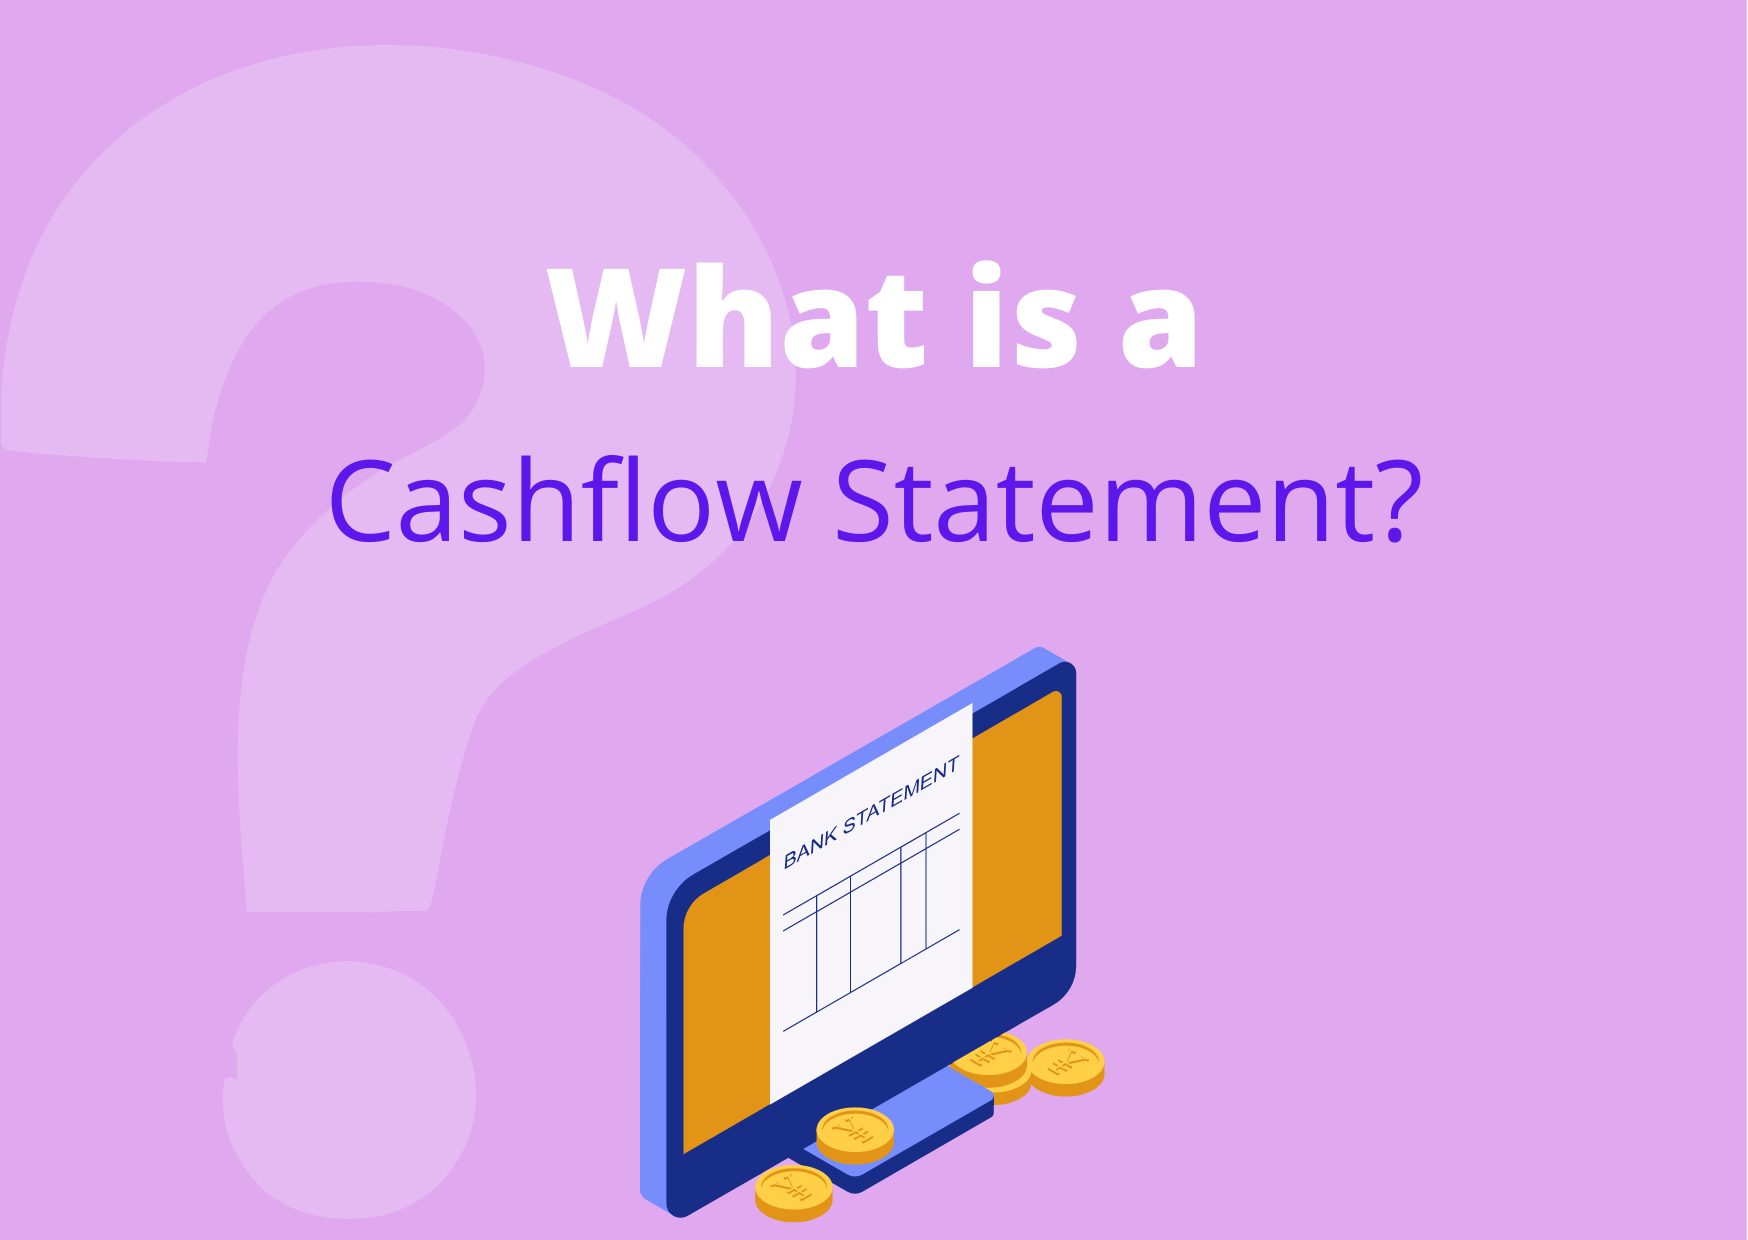 What is a cashflow statement?